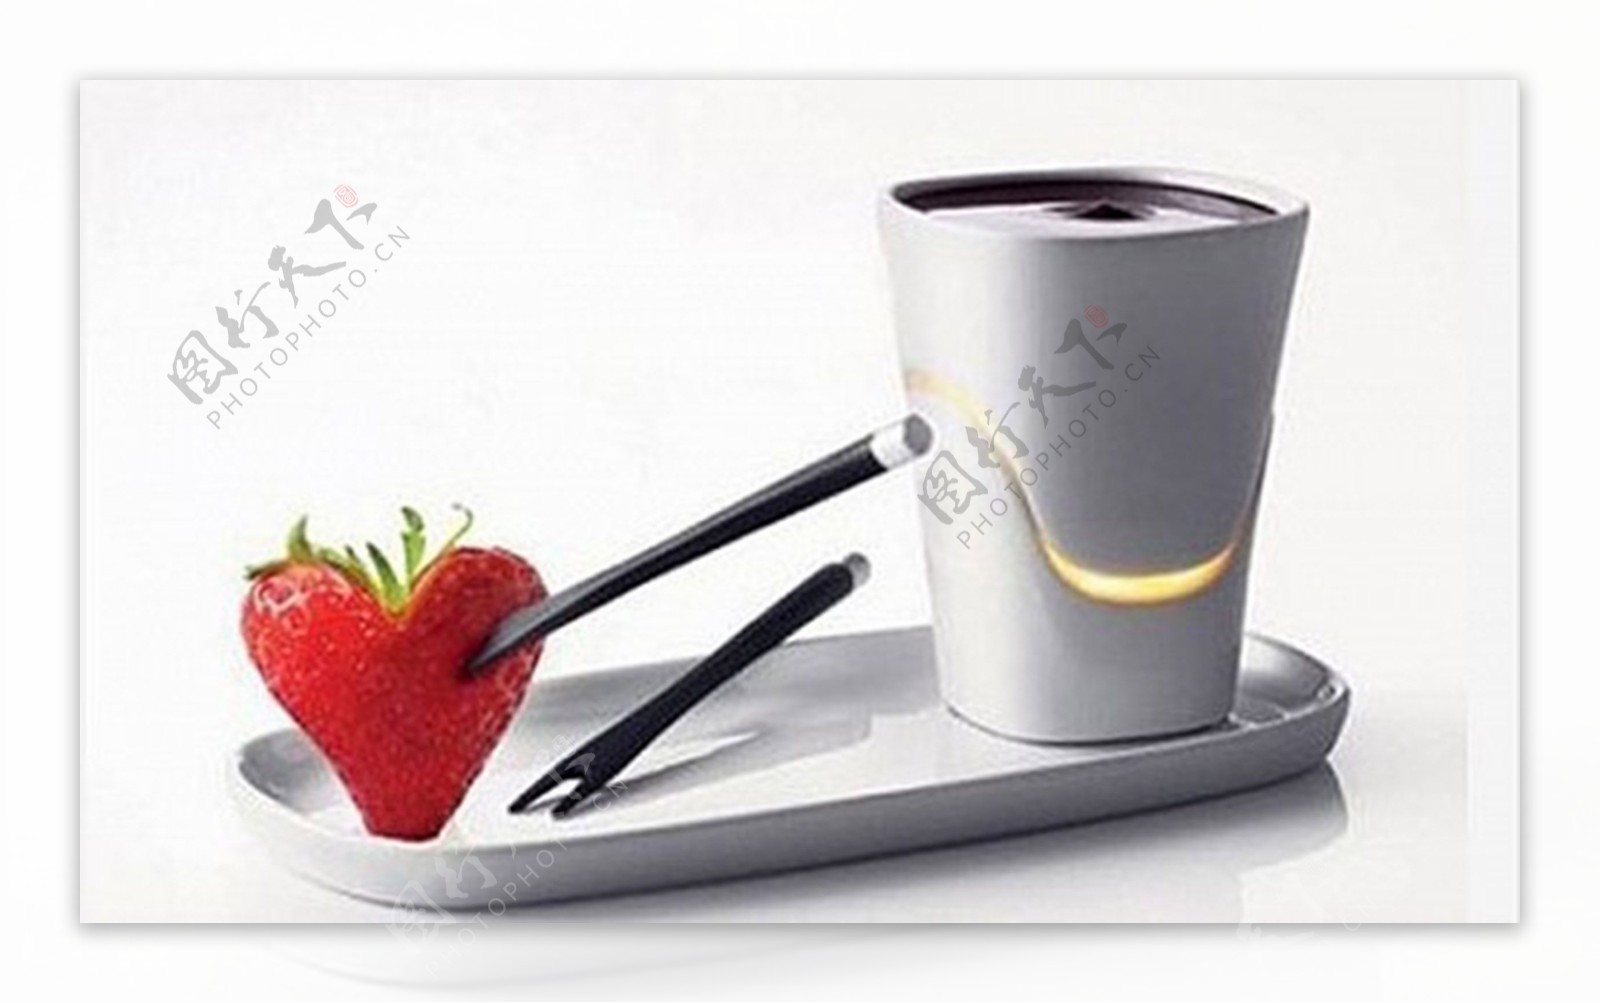 火锅的巧克力杯创意生活用品产品设计JPG